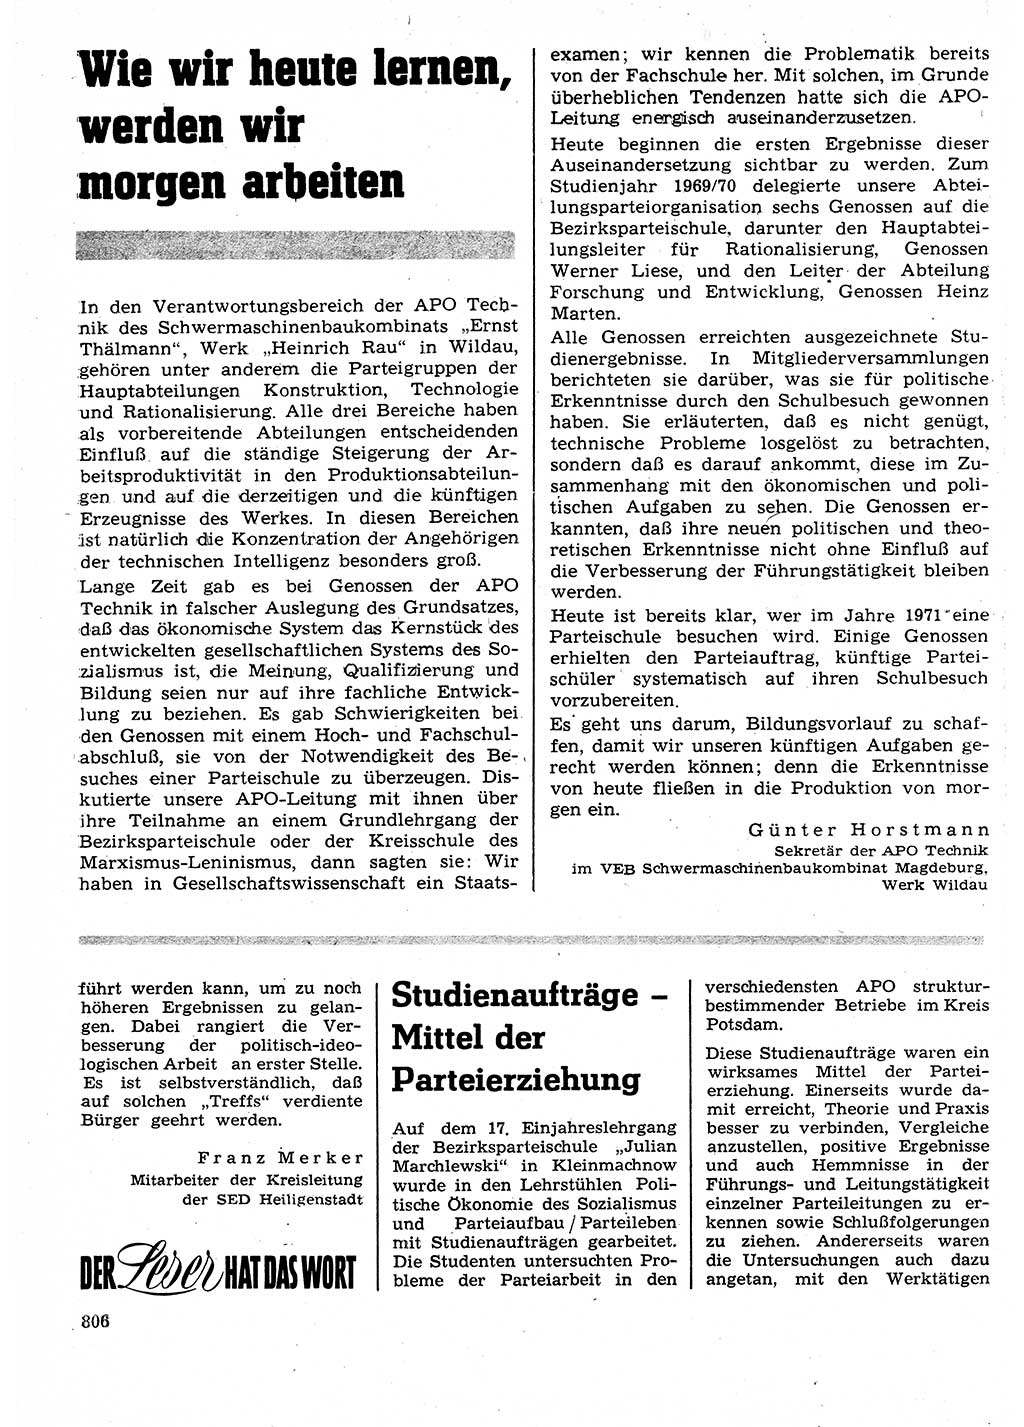 Neuer Weg (NW), Organ des Zentralkomitees (ZK) der SED (Sozialistische Einheitspartei Deutschlands) für Fragen des Parteilebens, 25. Jahrgang [Deutsche Demokratische Republik (DDR)] 1970, Seite 806 (NW ZK SED DDR 1970, S. 806)